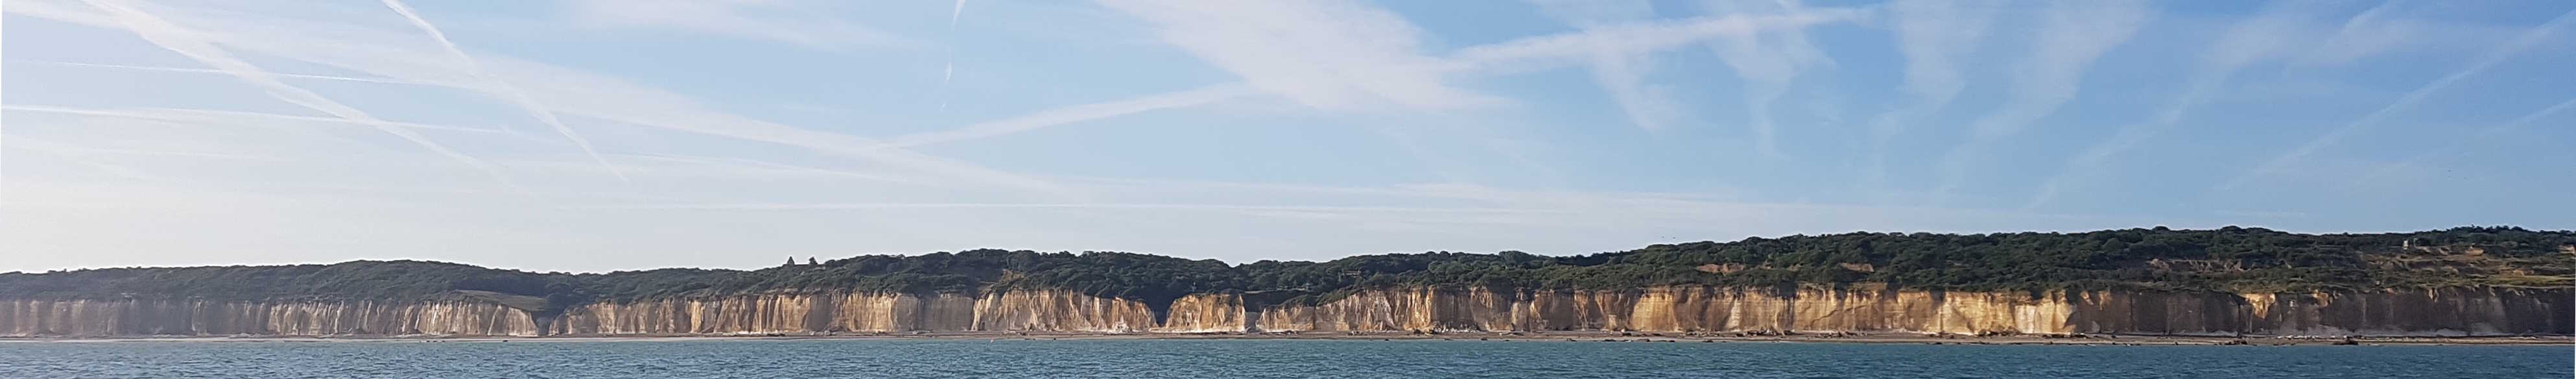 Brown Cliffs of Dieppe